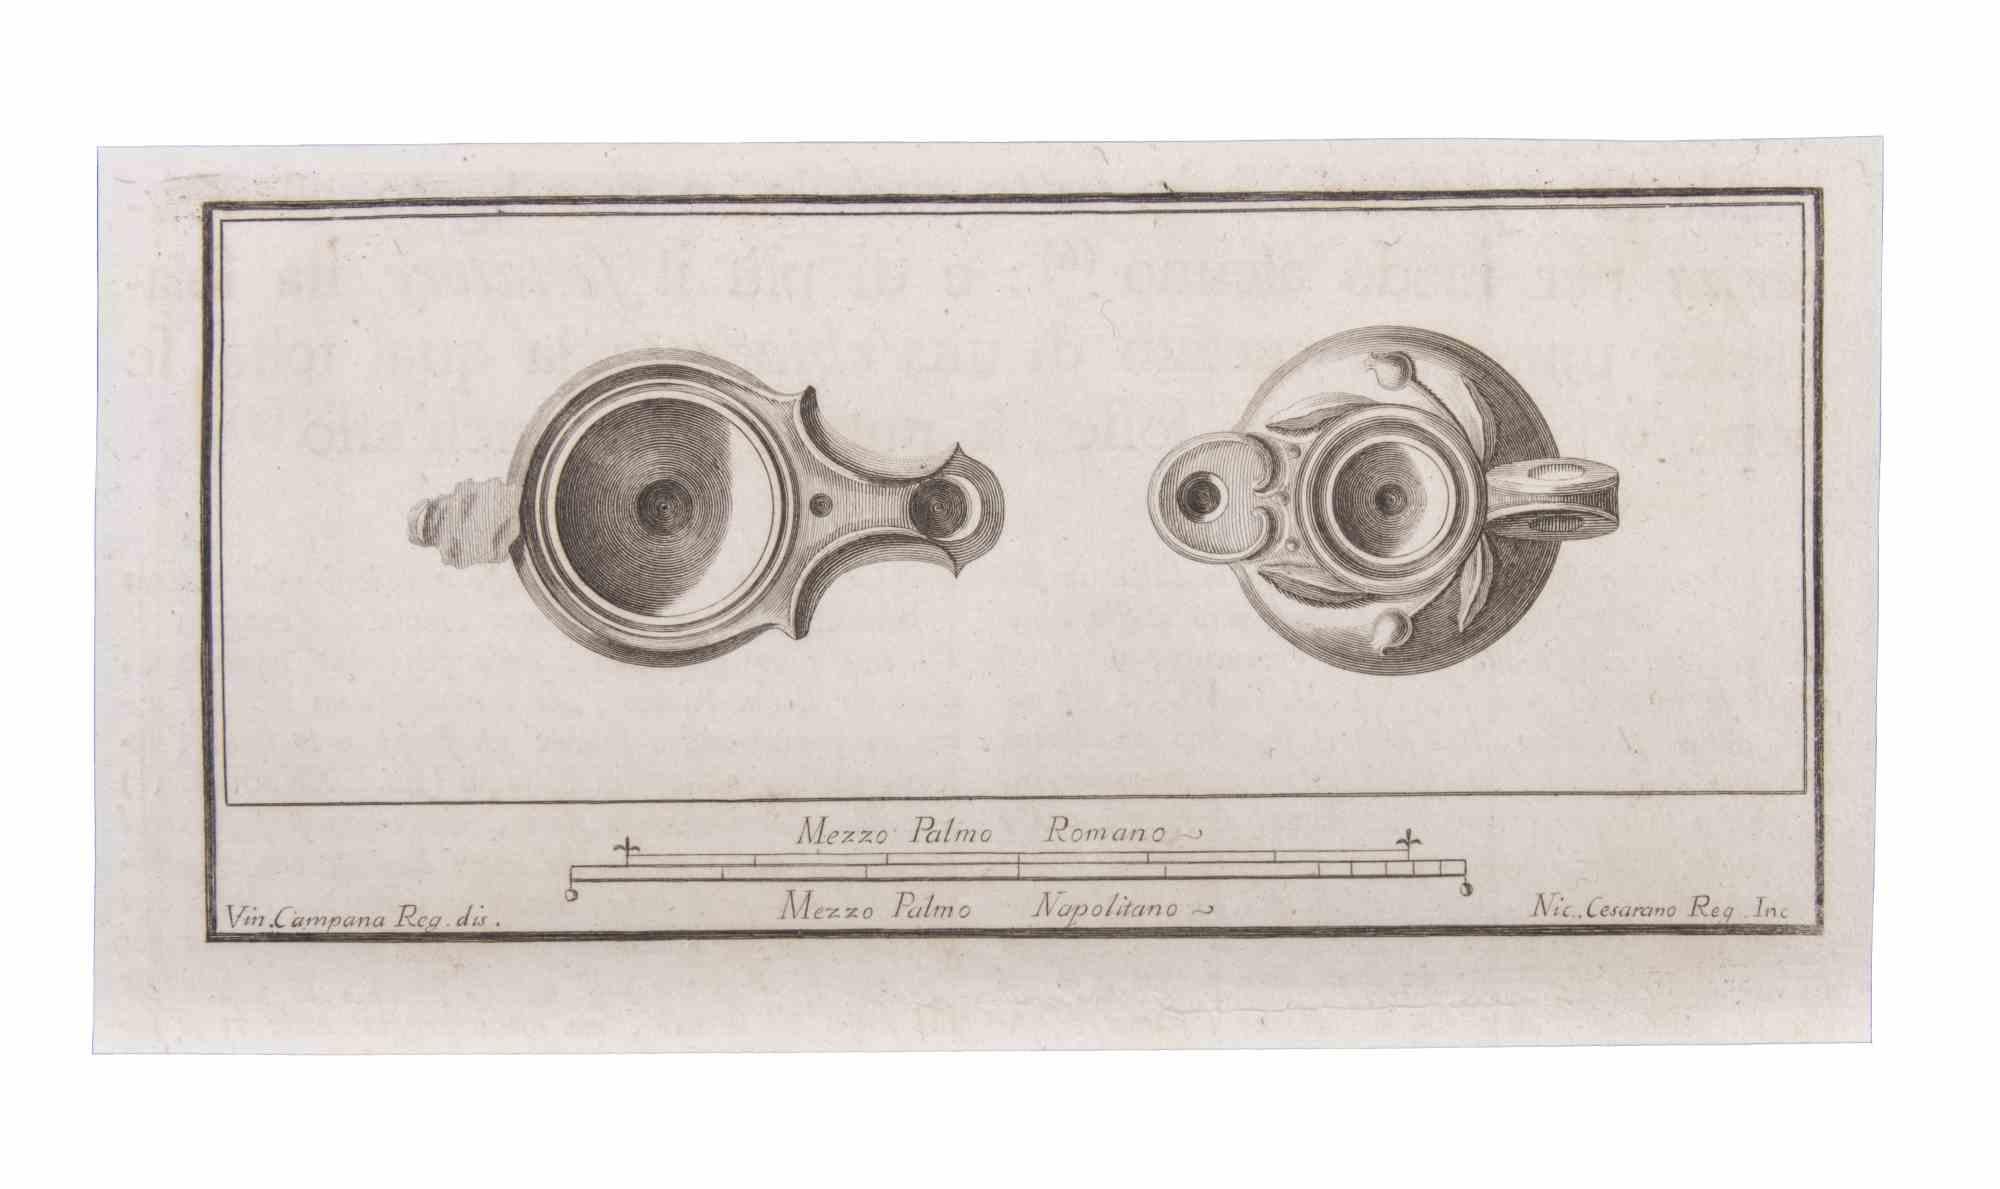 Lampe à huile est une eau-forte réalisée par Niccolò Cesarano (1740-1815).

La gravure appartient à la suite d'estampes "Antiquités d'Herculanum exposées" (titre original : "Le Antichità di Ercolano Esposte"), un volume de huit gravures des